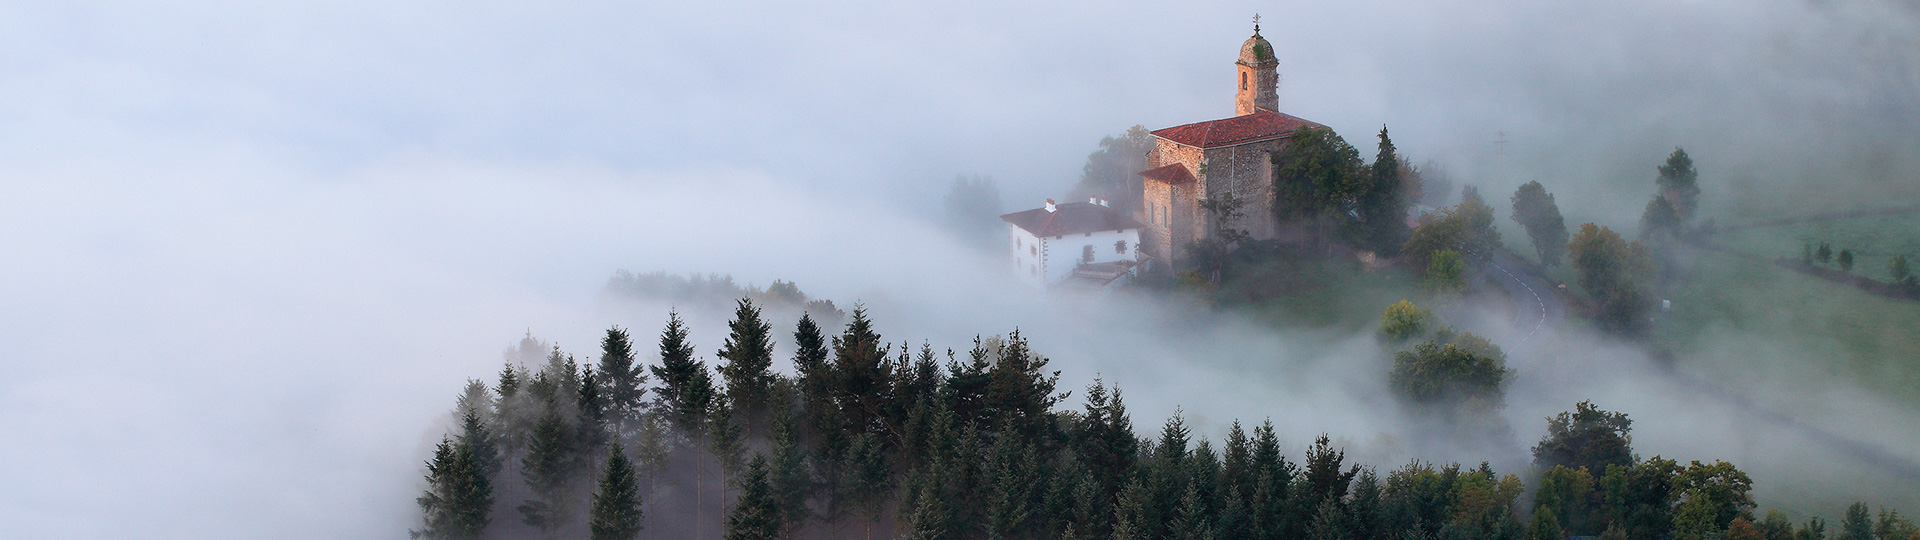 Brouillard au lever du jour dans la vallée d’Aramayona, Pays basque